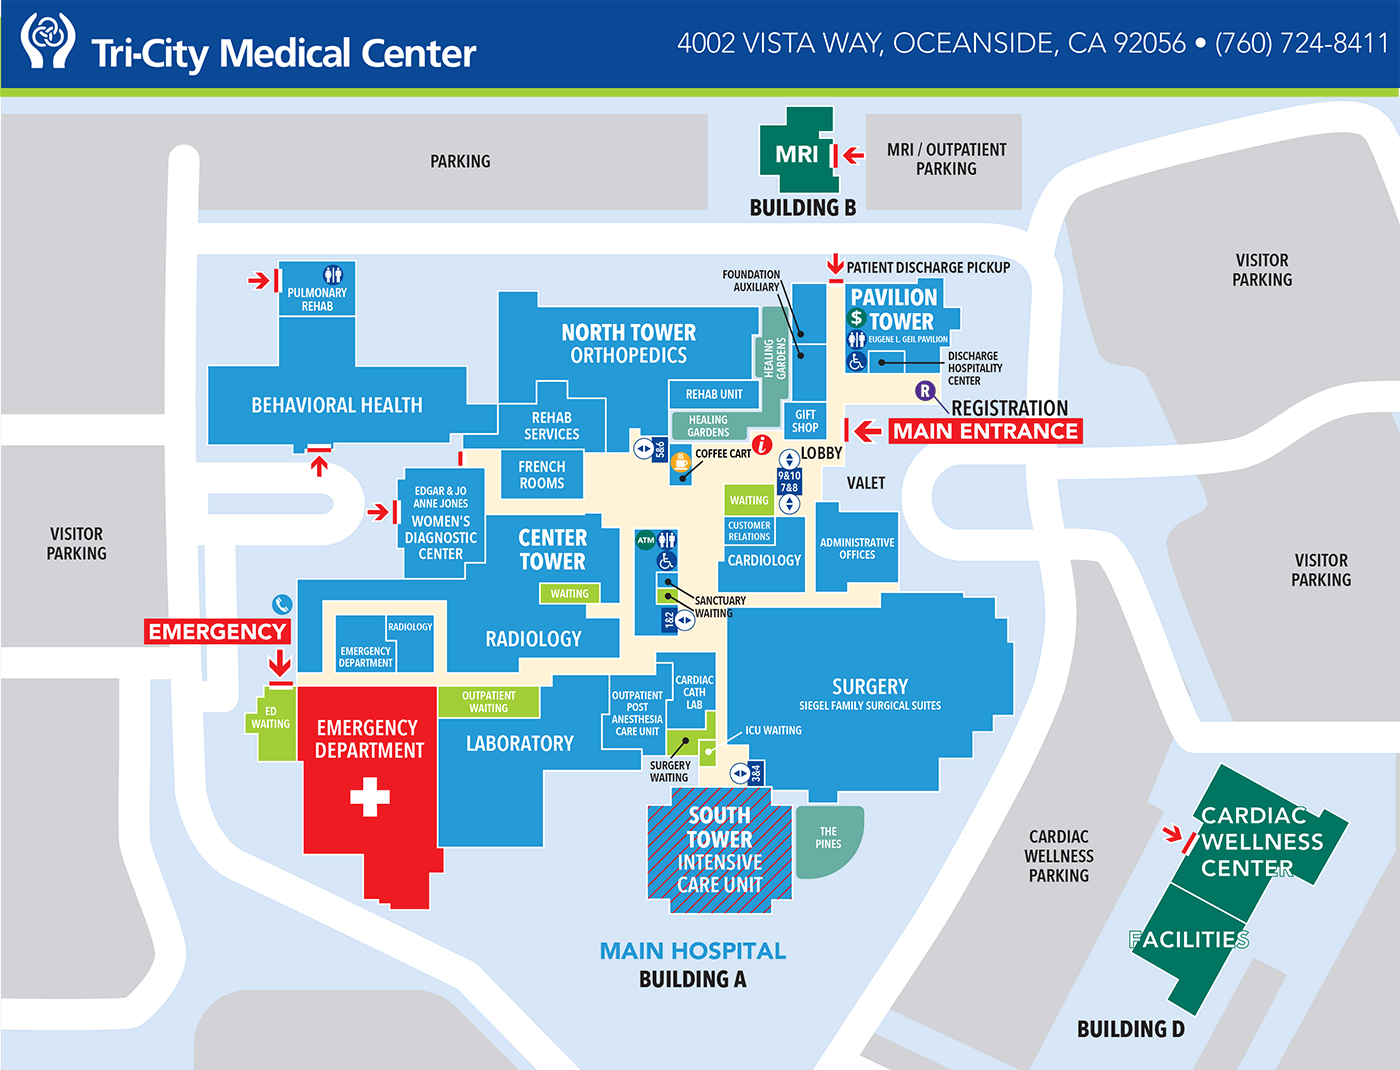 AAMC Campus Map